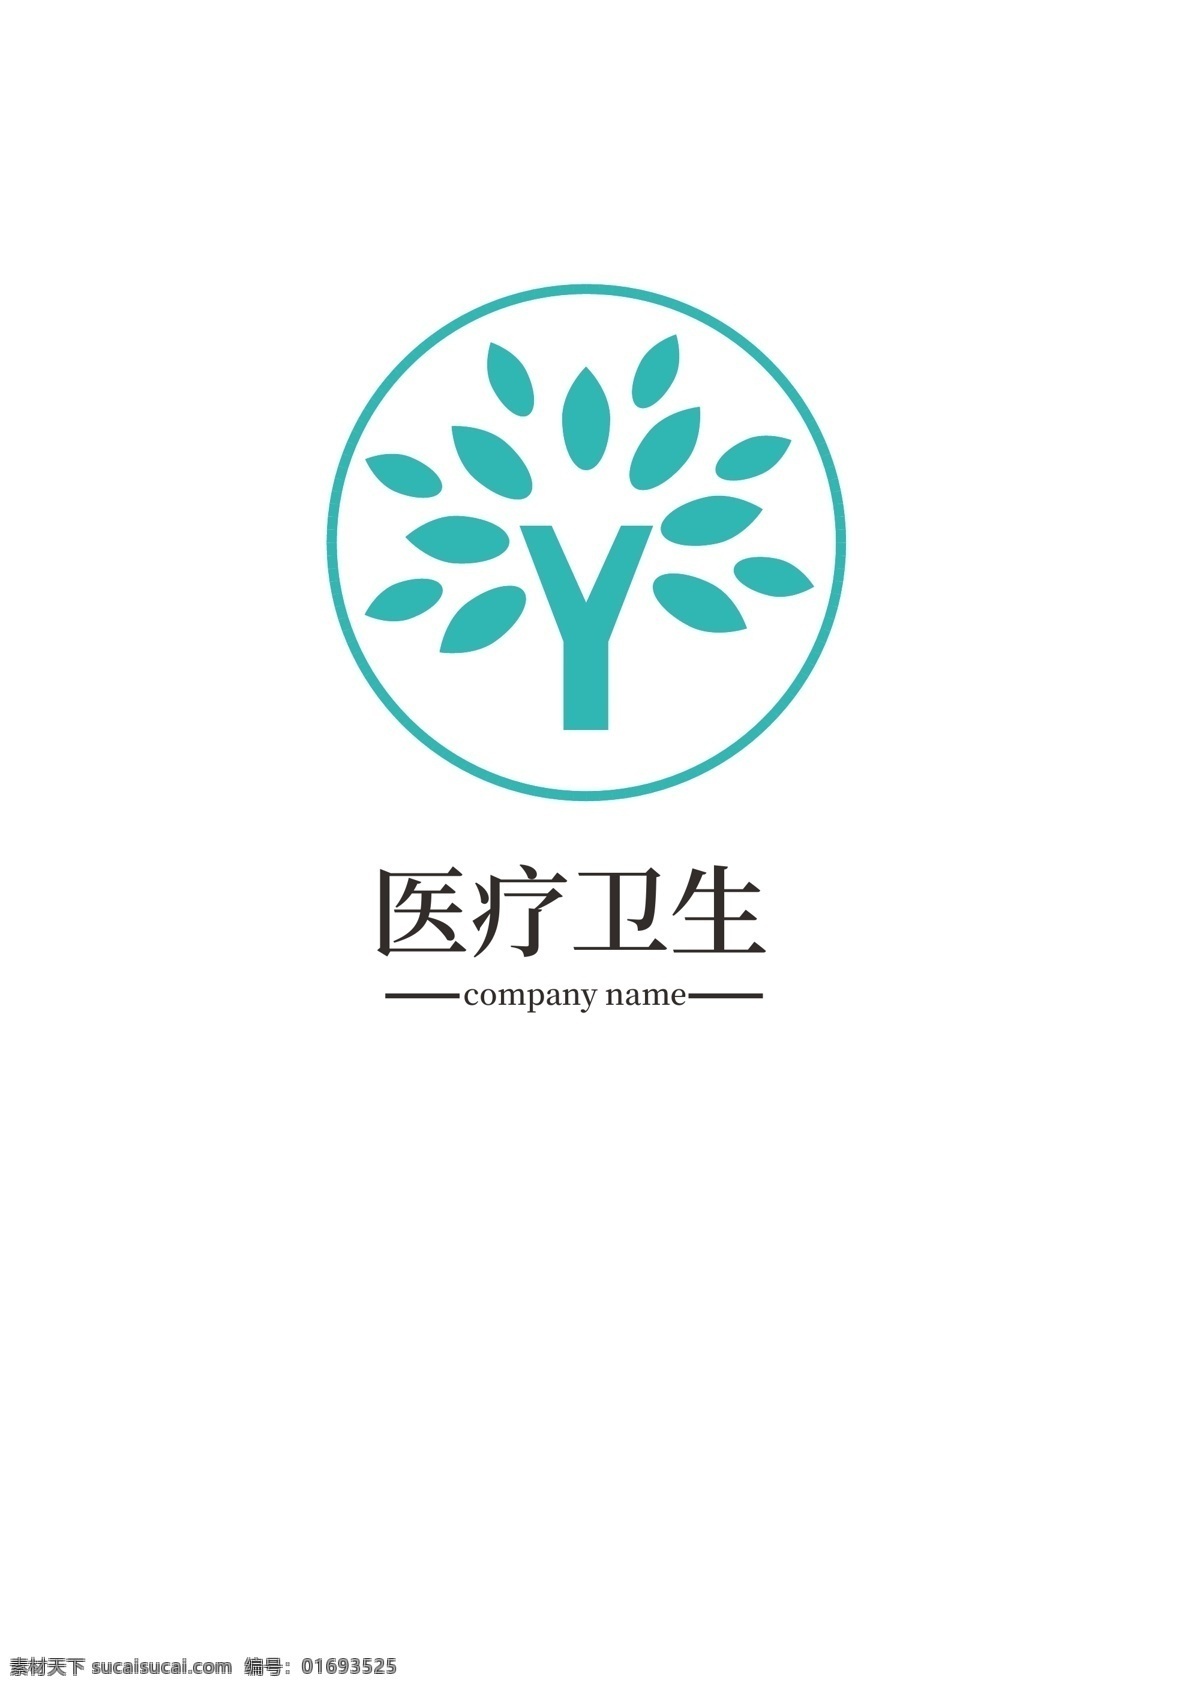 医疗 logo 医药 标识设计 卫生 商标设计 标志设计 蓝色 健康 树叶 图形